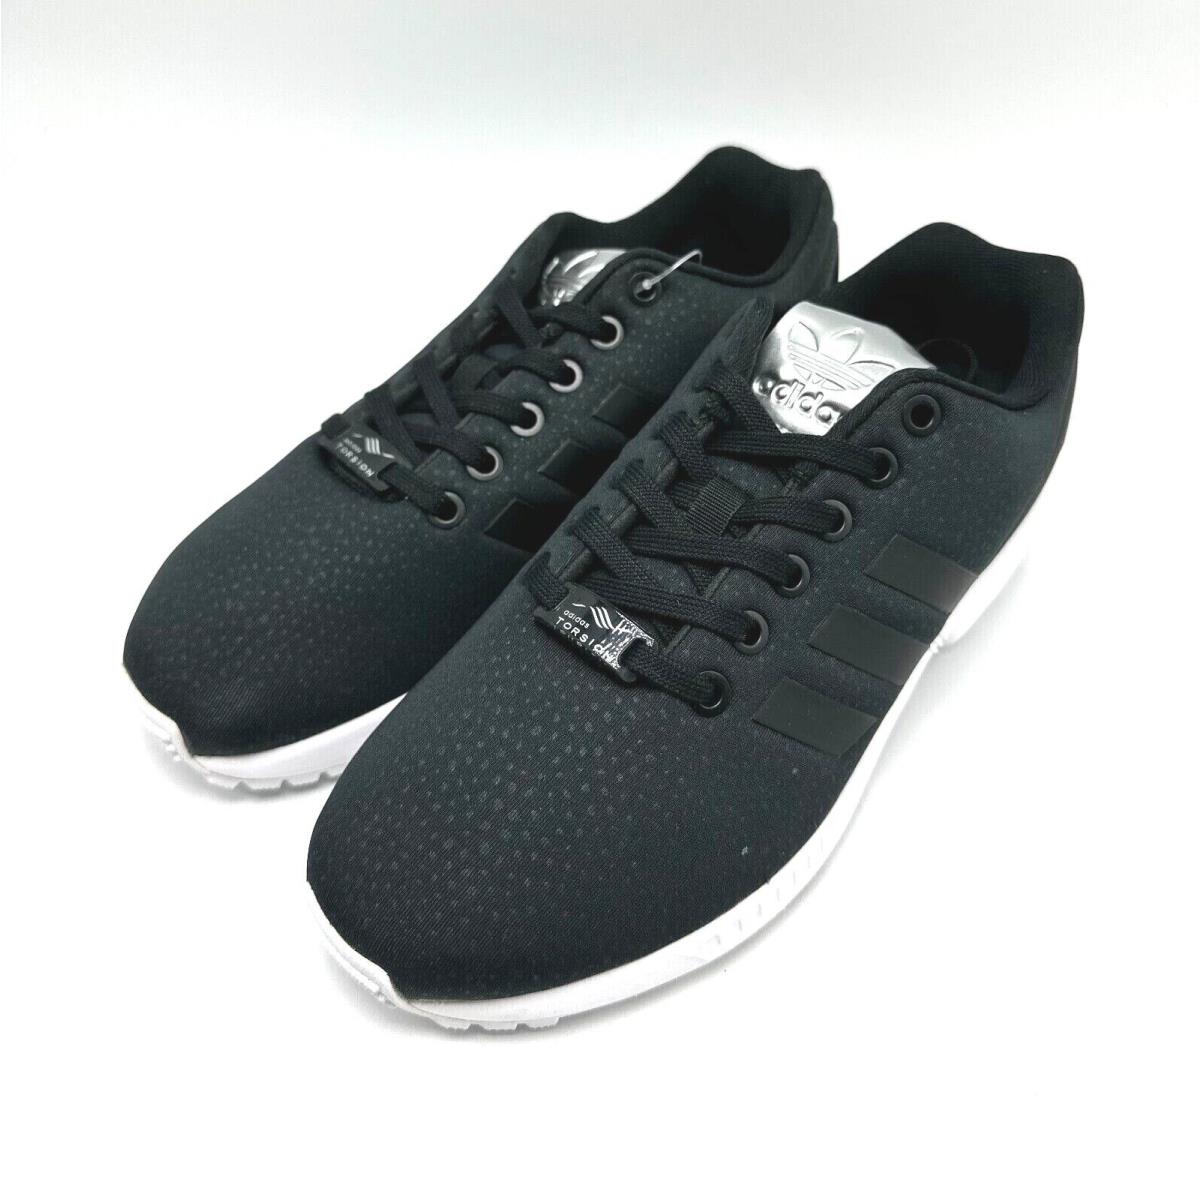 Adidas Originals ZX Flux W Black Women`s Shoes BY9215 Size 5.5